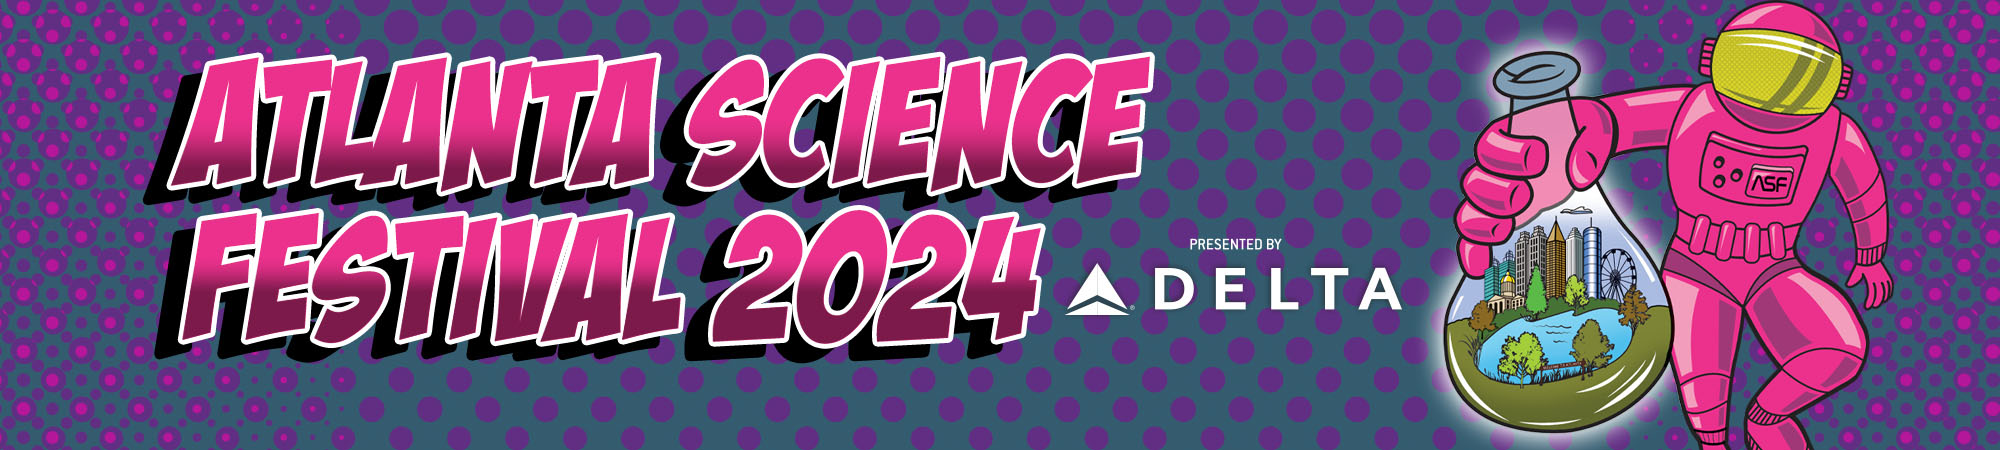 Atlanta Science Festival 2024, presented by Delta